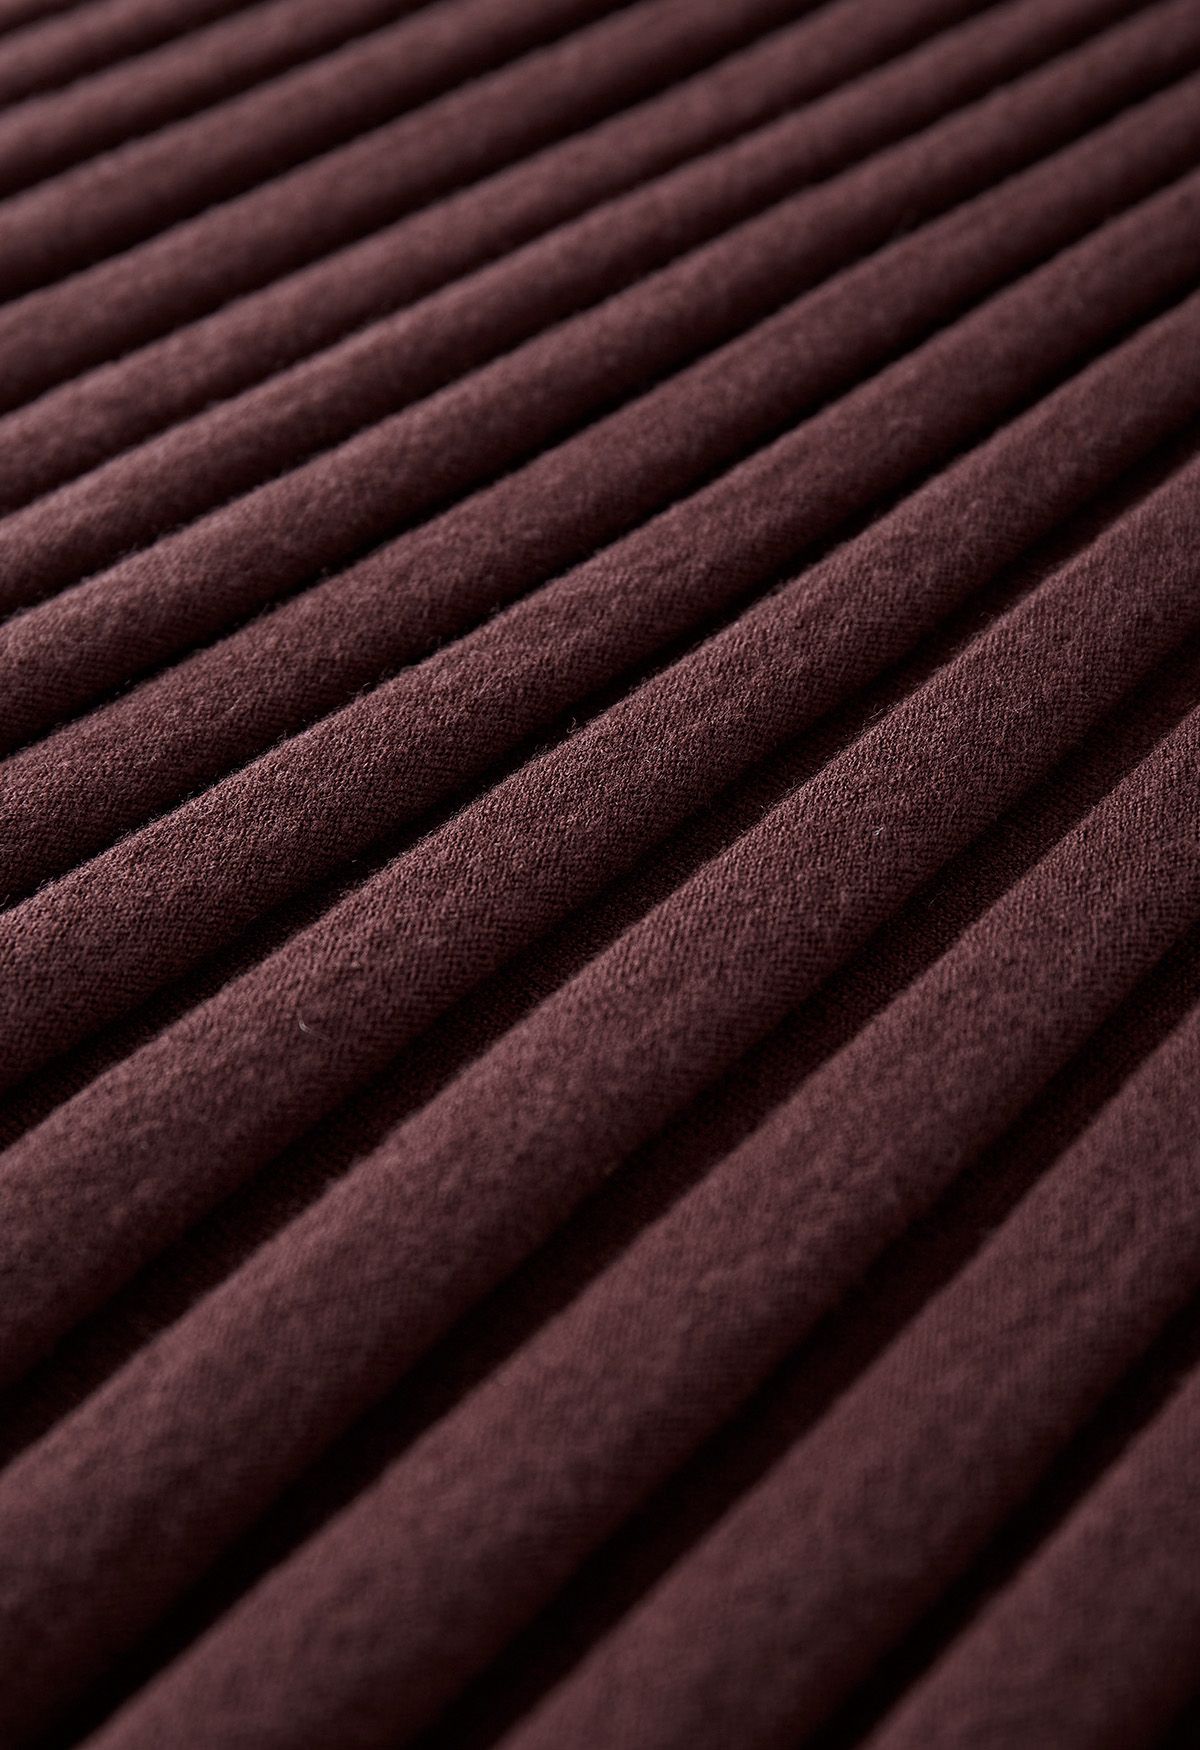 Falda larga de punto ultrasuave con dobladillo de lechuga en marrón